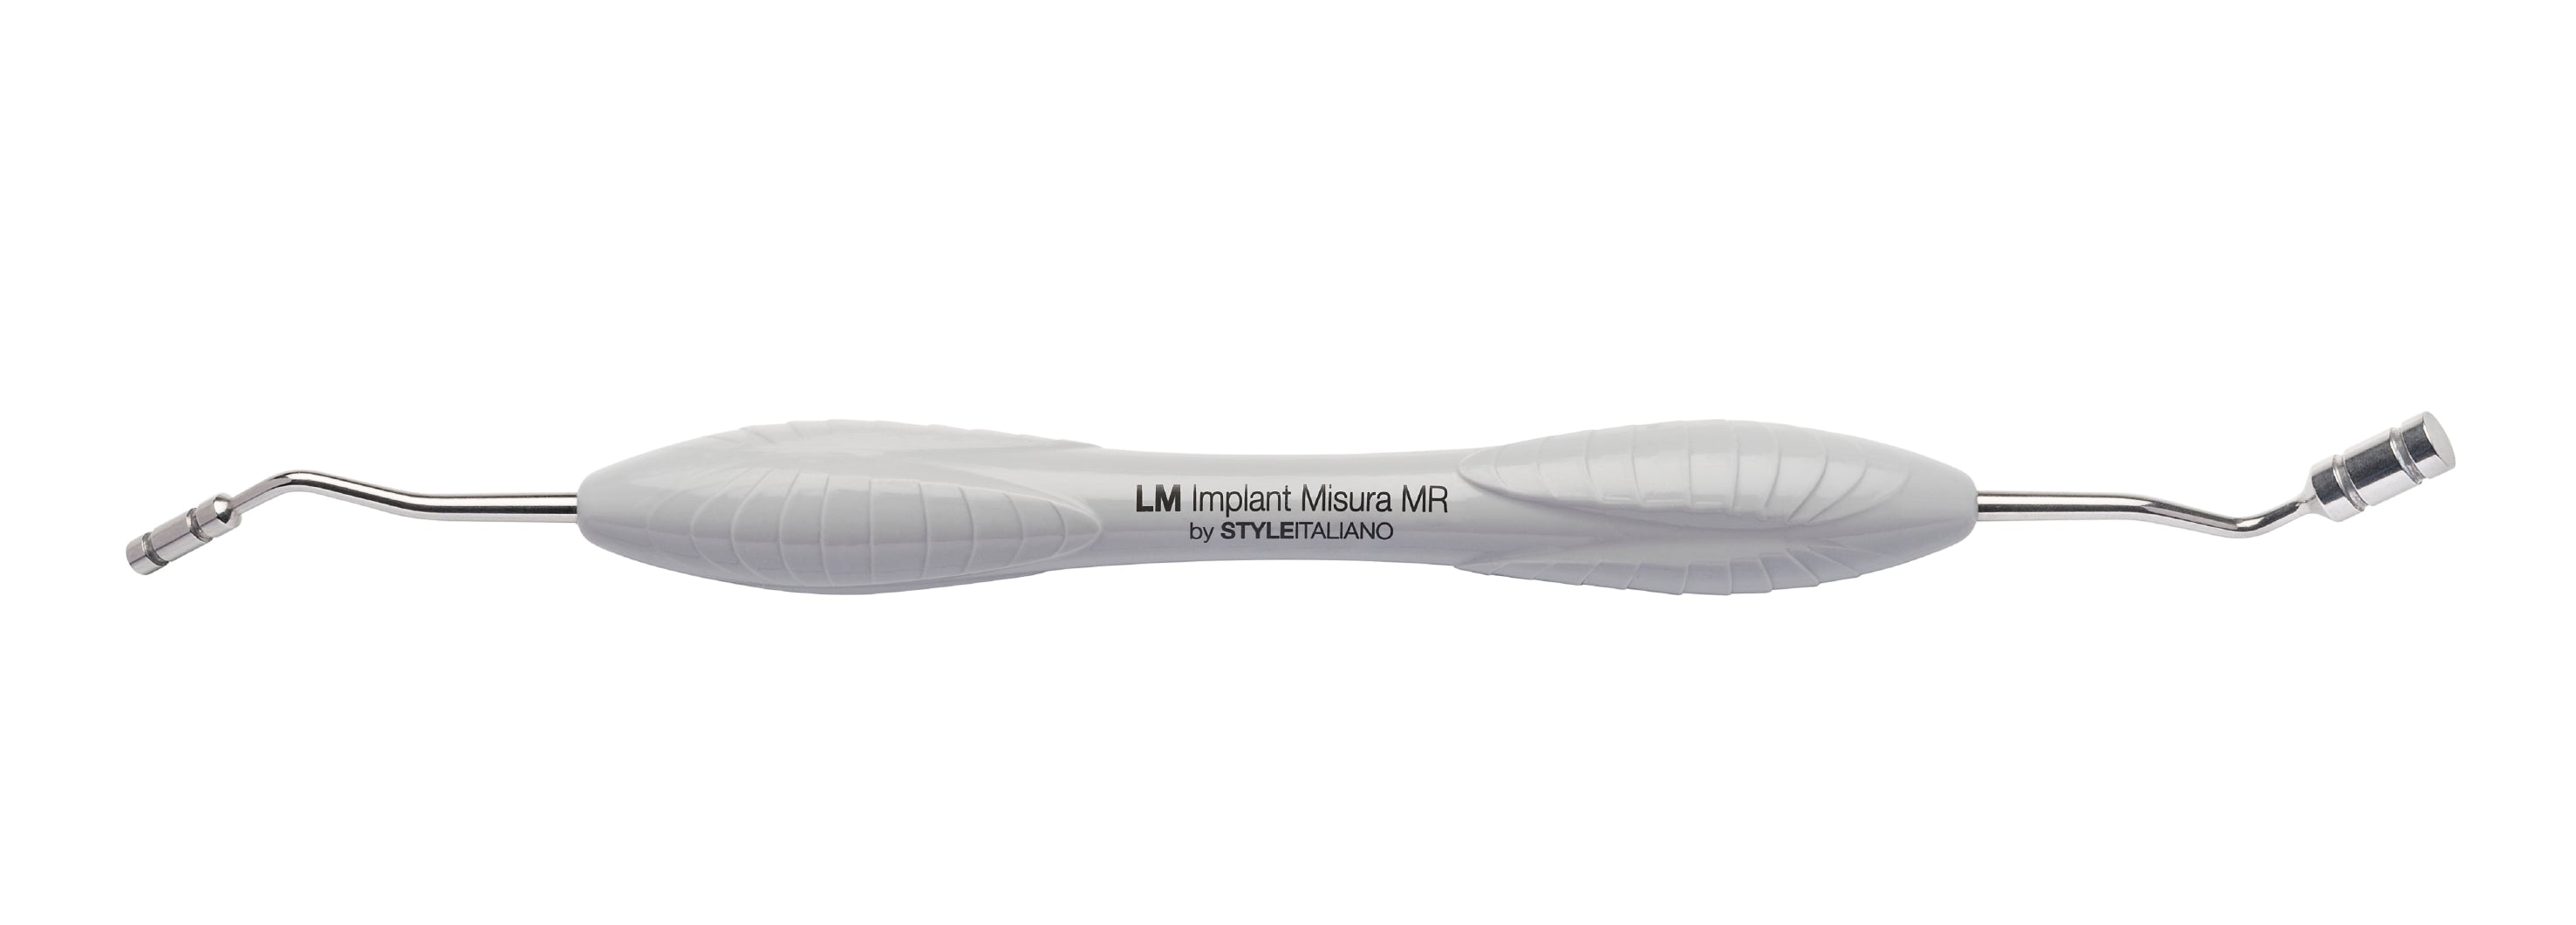 LM 400-401ES Implant Misura MR 3.0-5.0